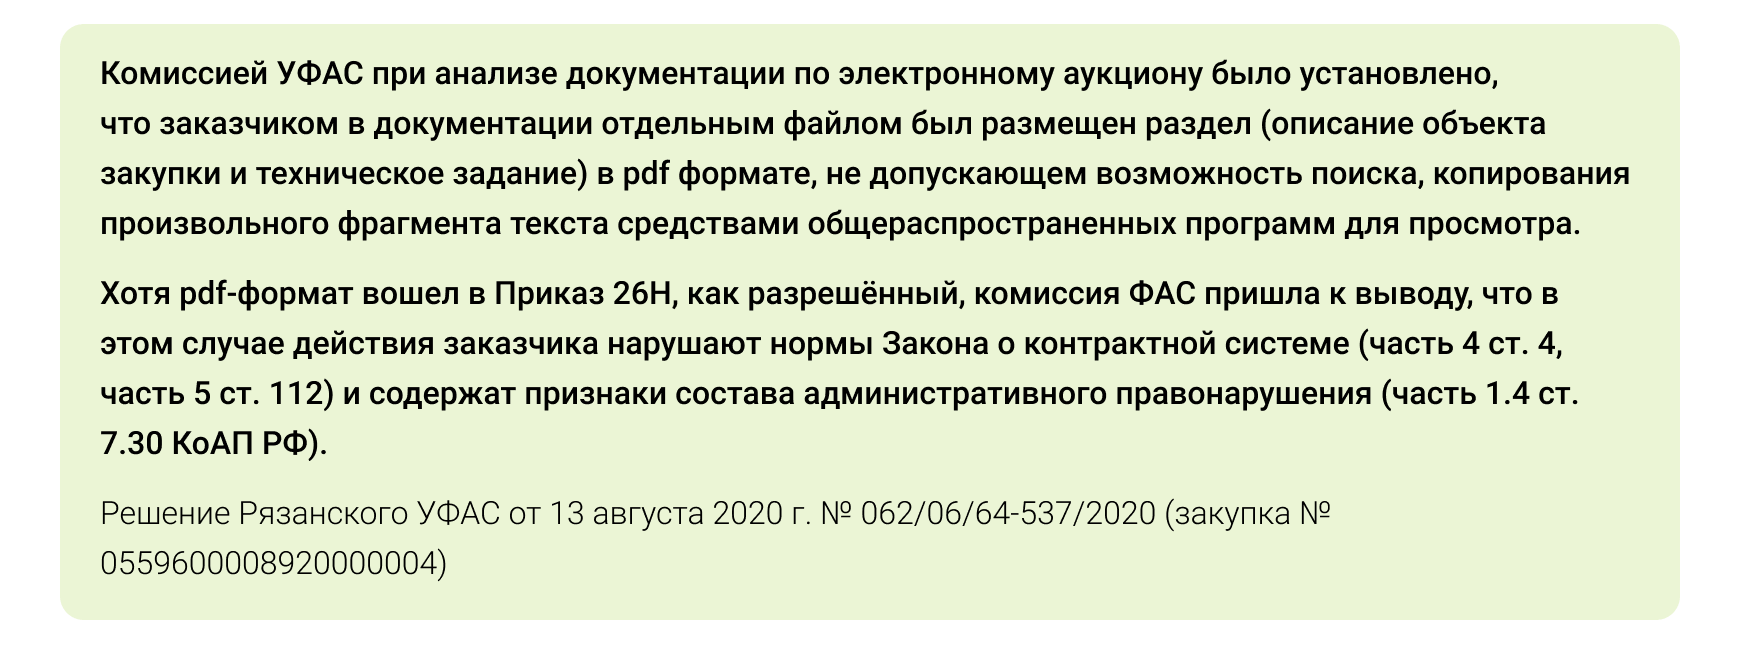 Решение Рязанского УФАС от 13 августа 2020 г